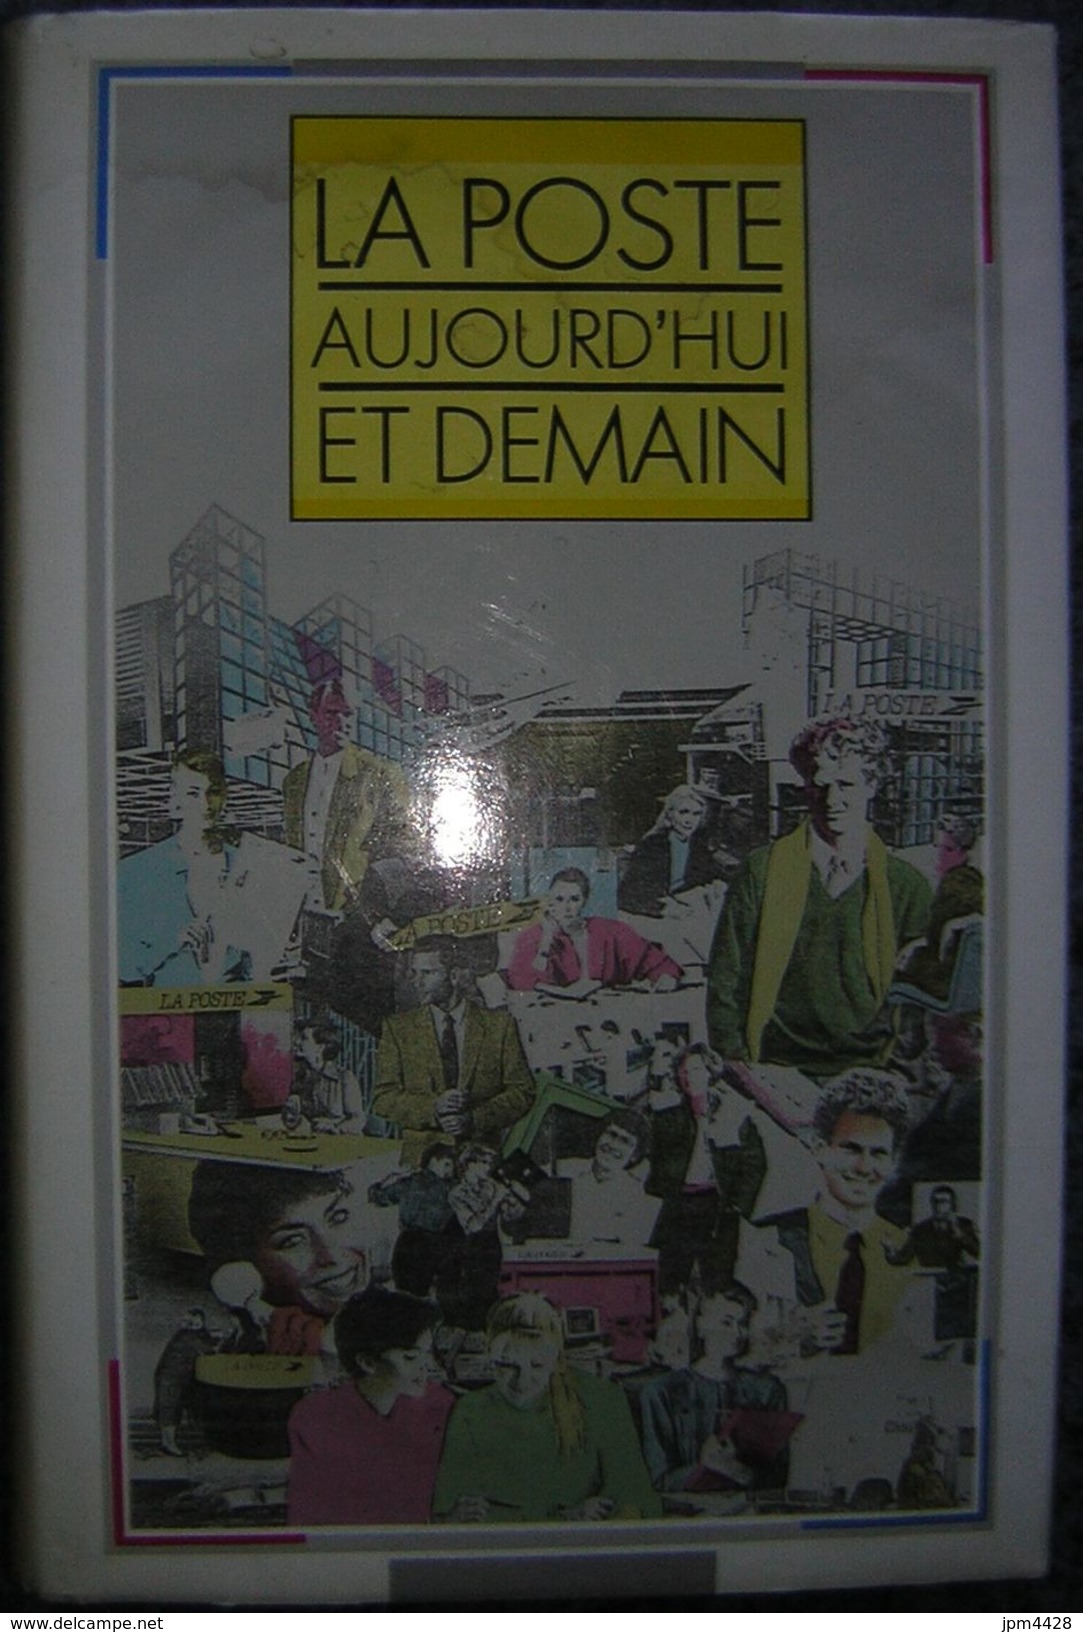 La Poste Aujouird'hui Et Demain Livre De 1989, 222 Pages - Ministére Des Postes, Des Télécomminications Et De L'espace - Manuales